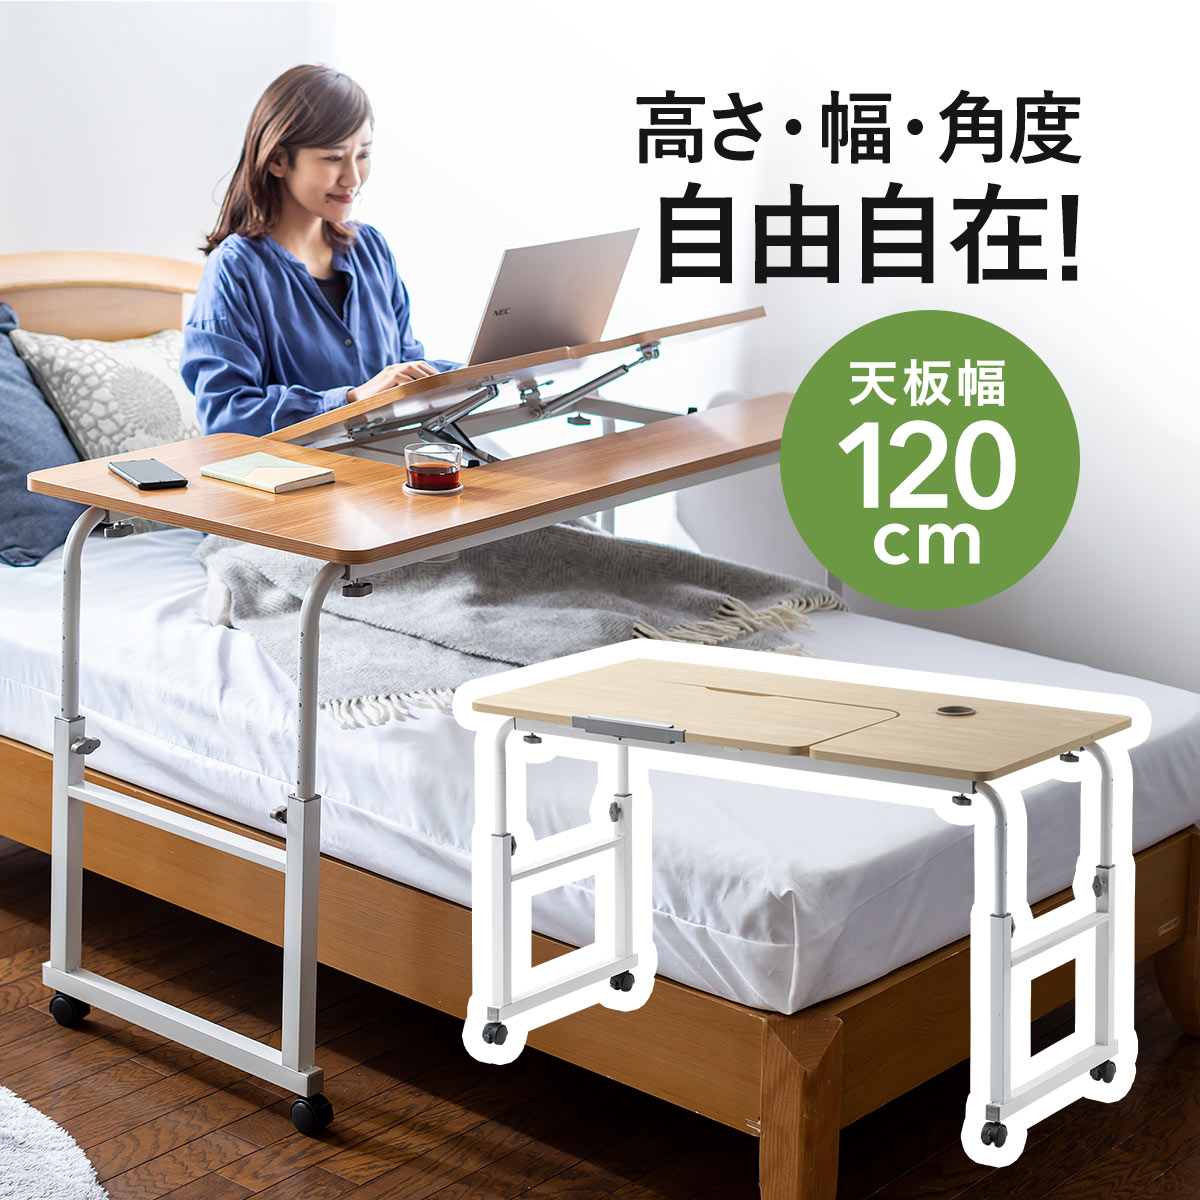 売れ筋割引品 【値下げ】手動昇降式ベッド 簡易ベッド/折りたたみベッド